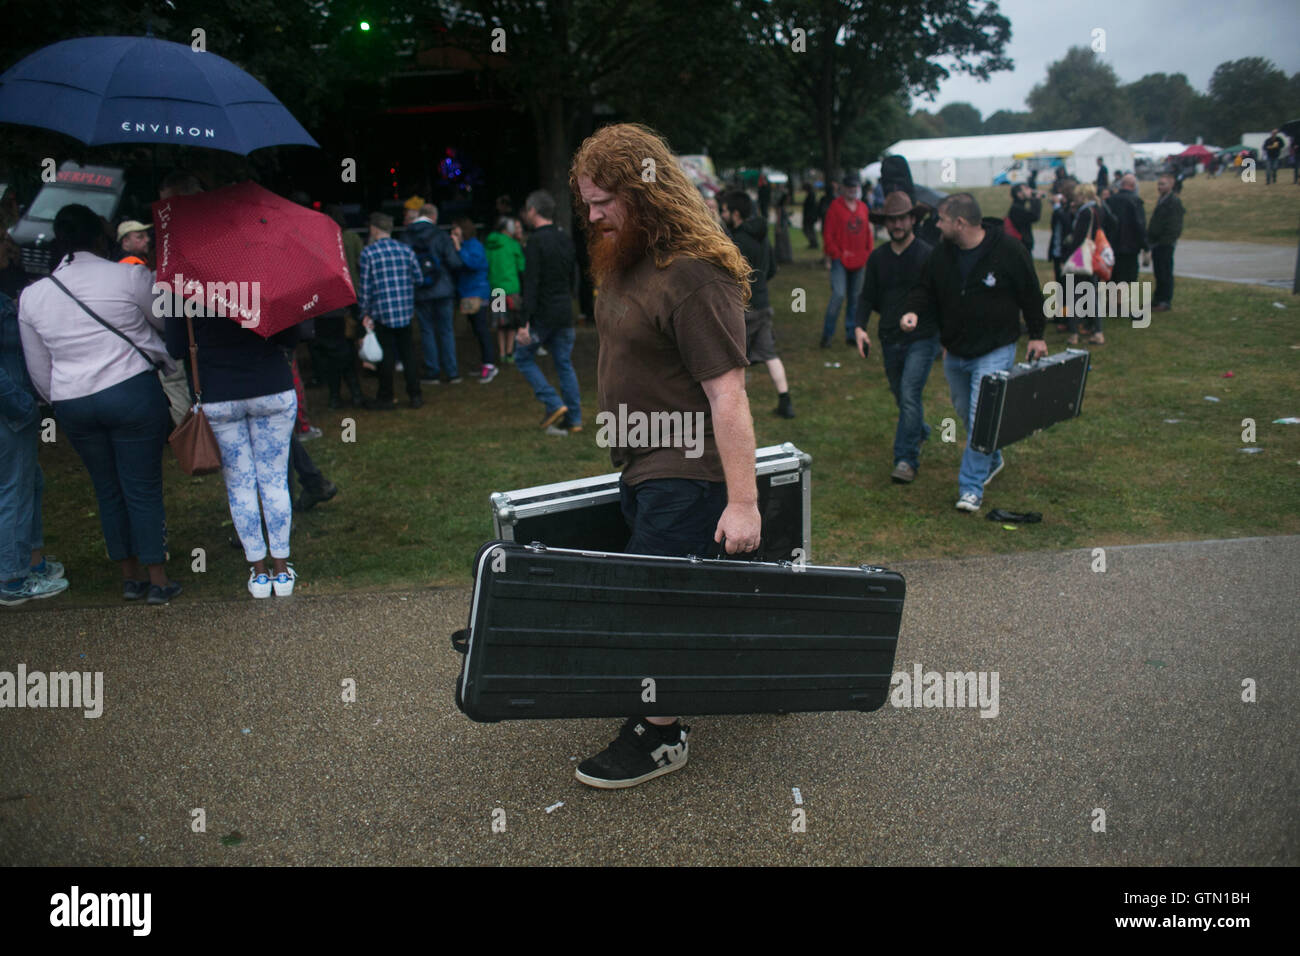 Ein Band-Mitglied der Alternative Parkplatz trägt seine Ausrüstung um ihre van im Regen nach ihren Auftritt, London, Großbritannien, 3. Sep Stockfoto